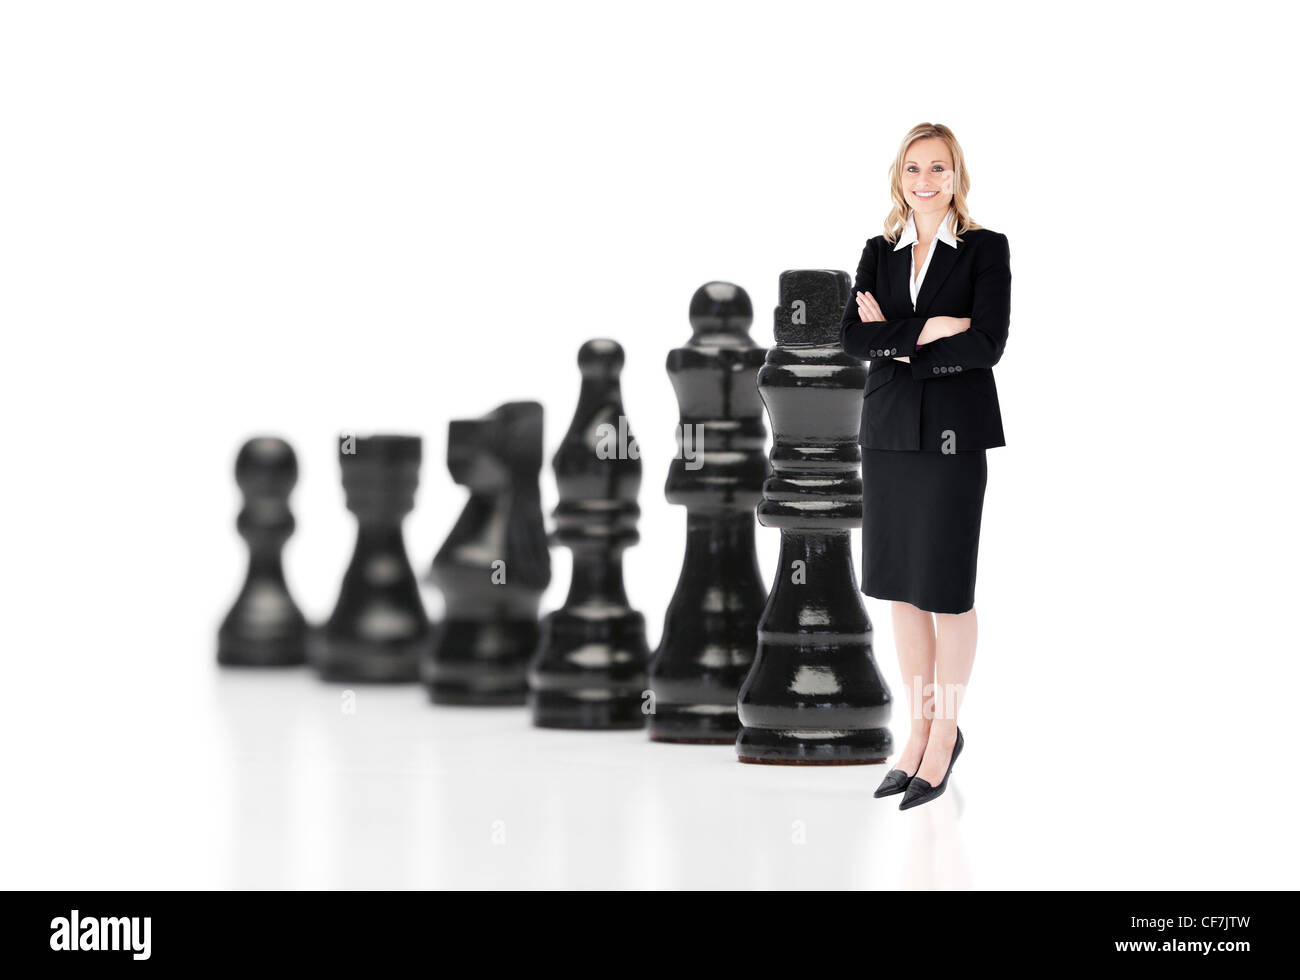 Businesswoman in front of black pièces des échecs Banque D'Images